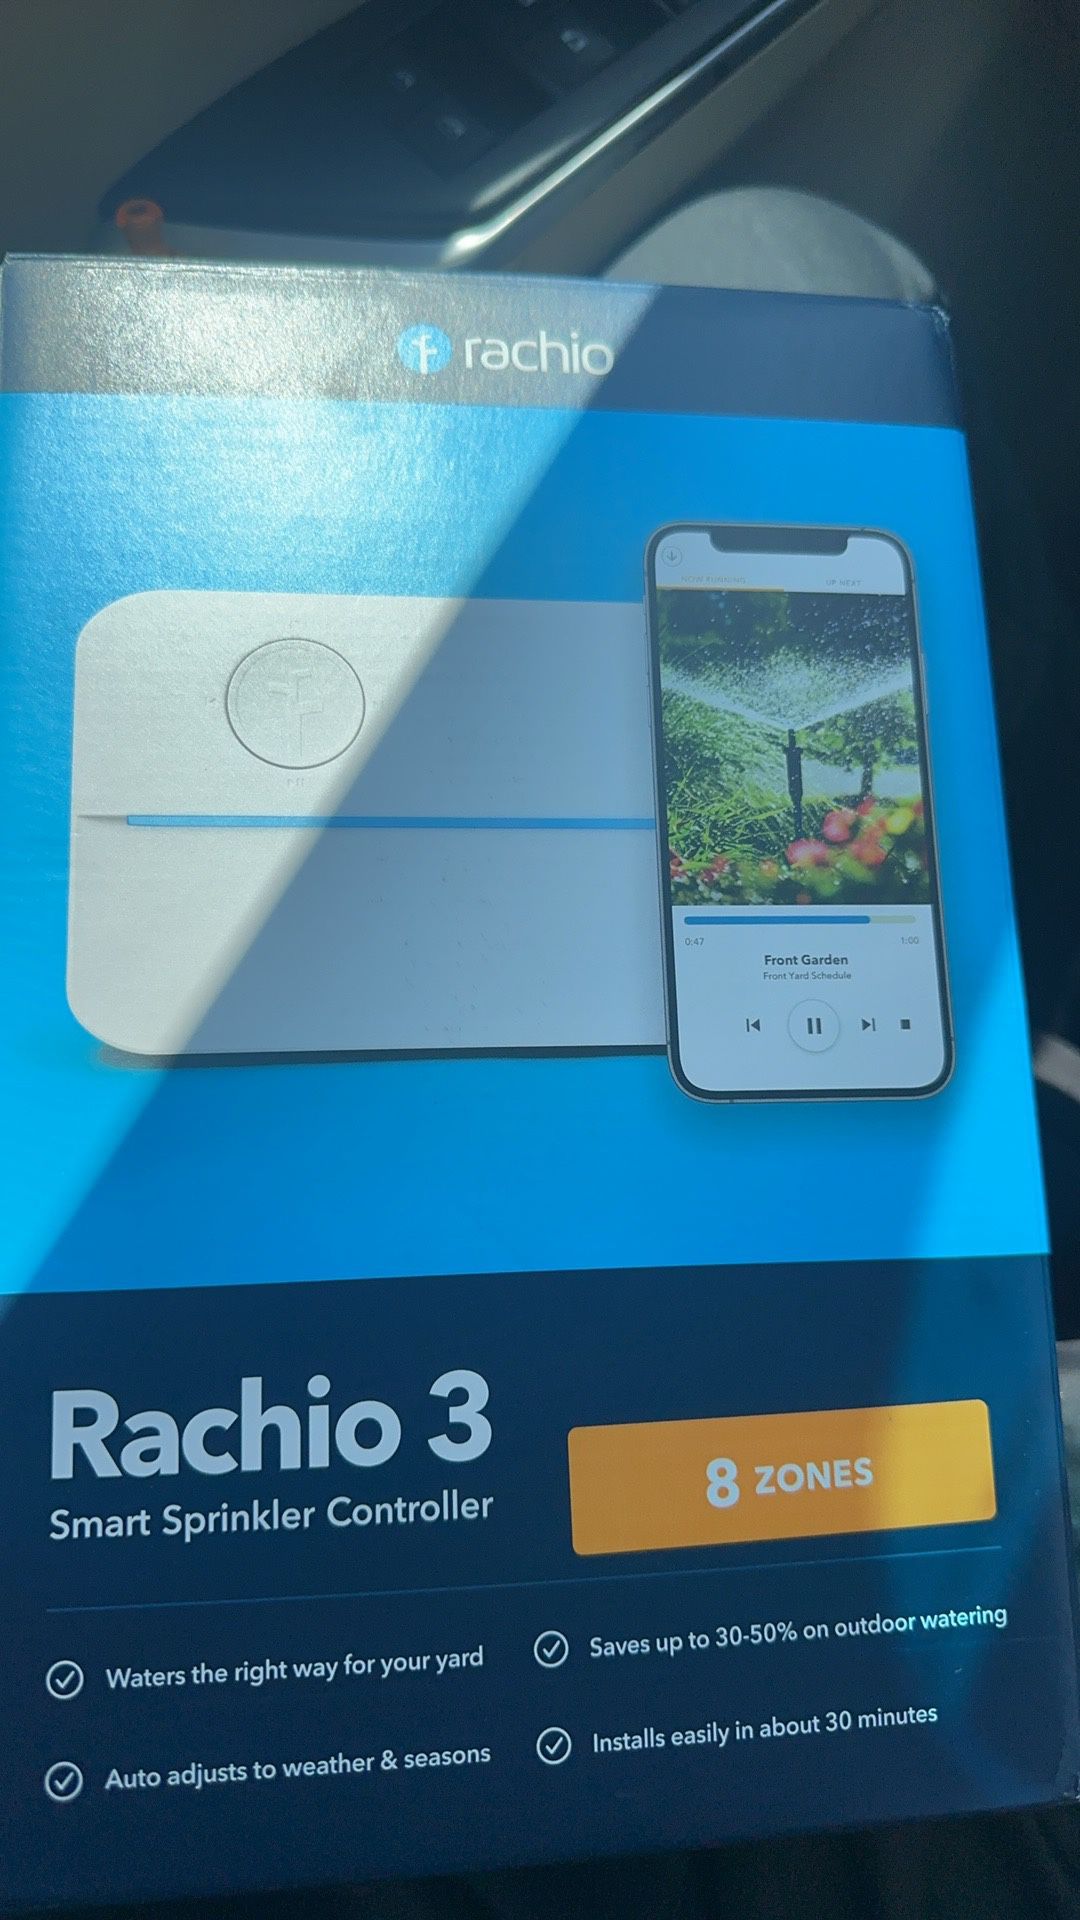 Rachio 3 Outdoor Enclosure AND Smart Sprinkler Controller 8 Zones 